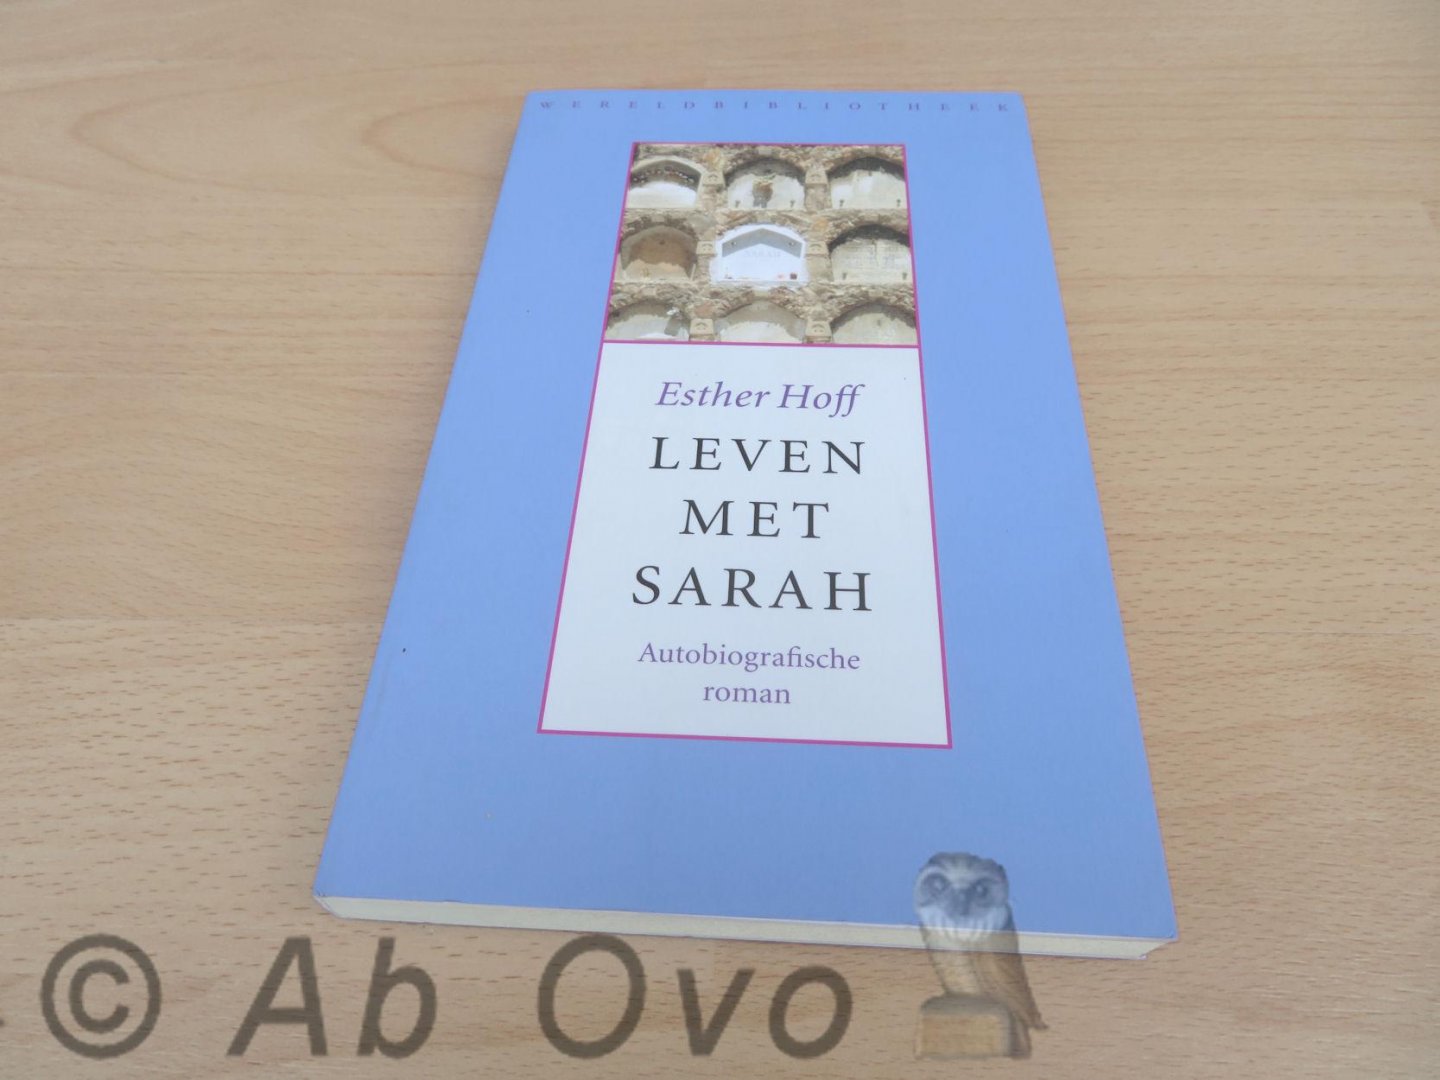 Hoff, Esther - Leven met Sarah - autobiografische roman